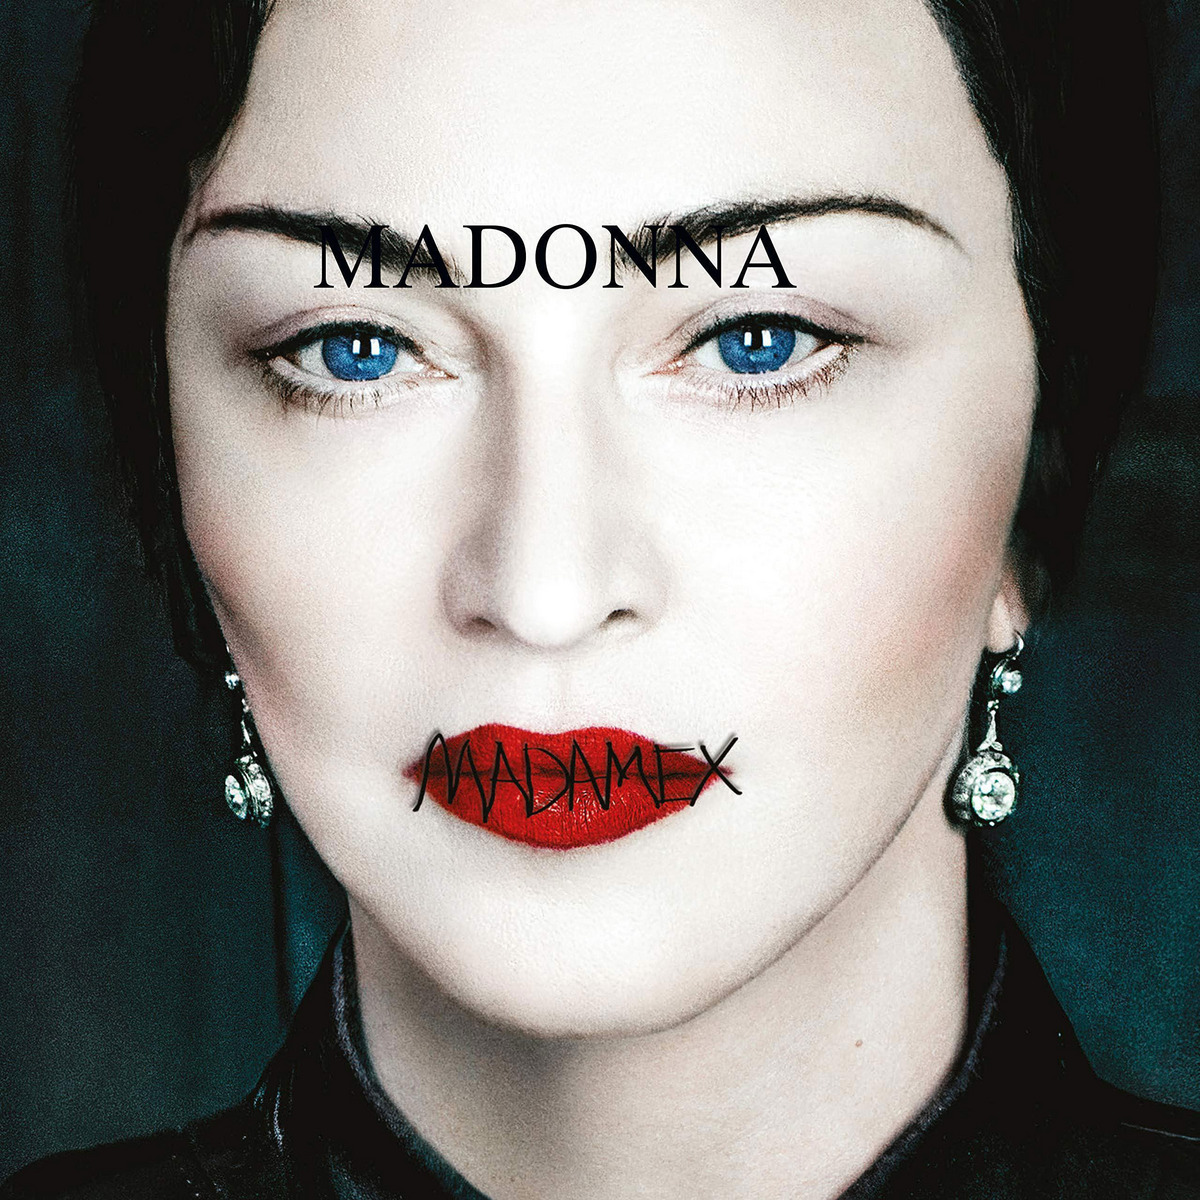 audio review : Madame X ( album ) ... Madonna